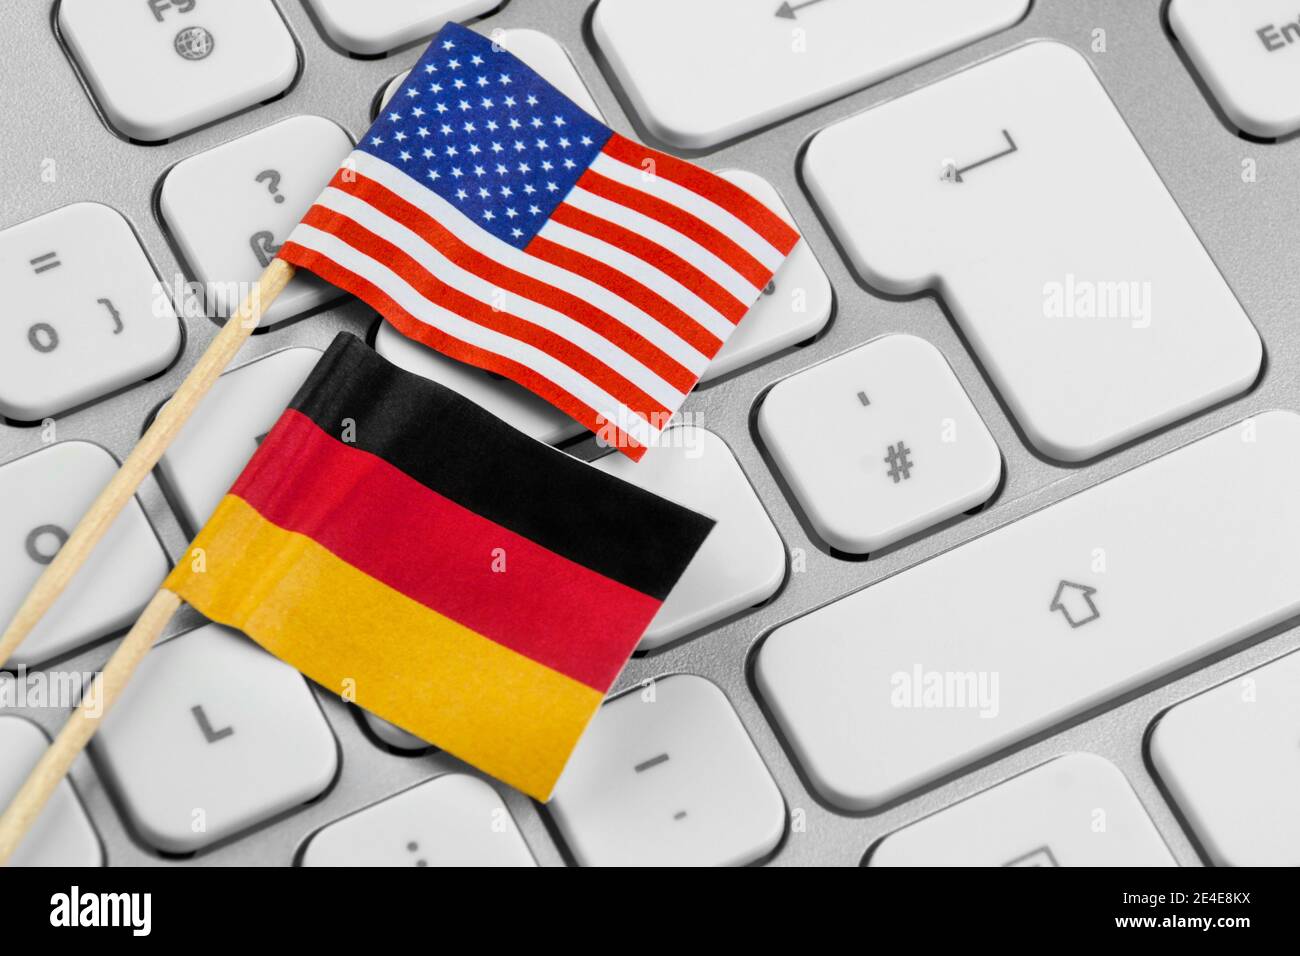 Flaggen USA und Deutschland mit PC Keyboard Stock Photo